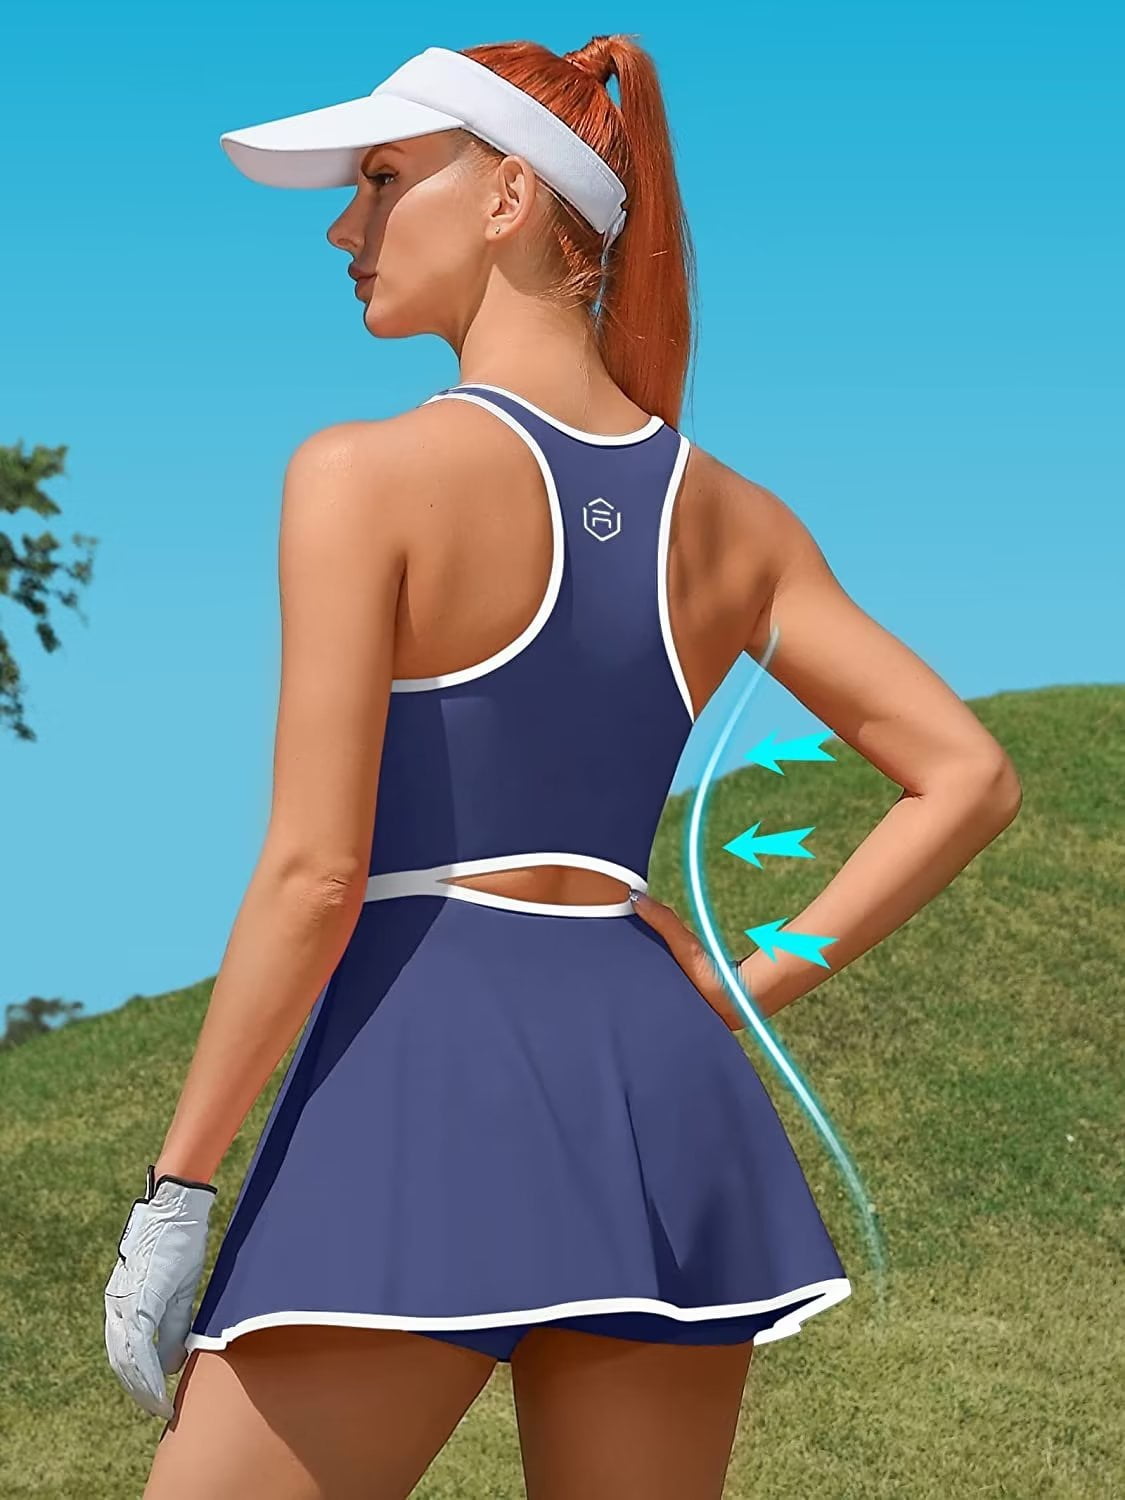 tennis dresses for women